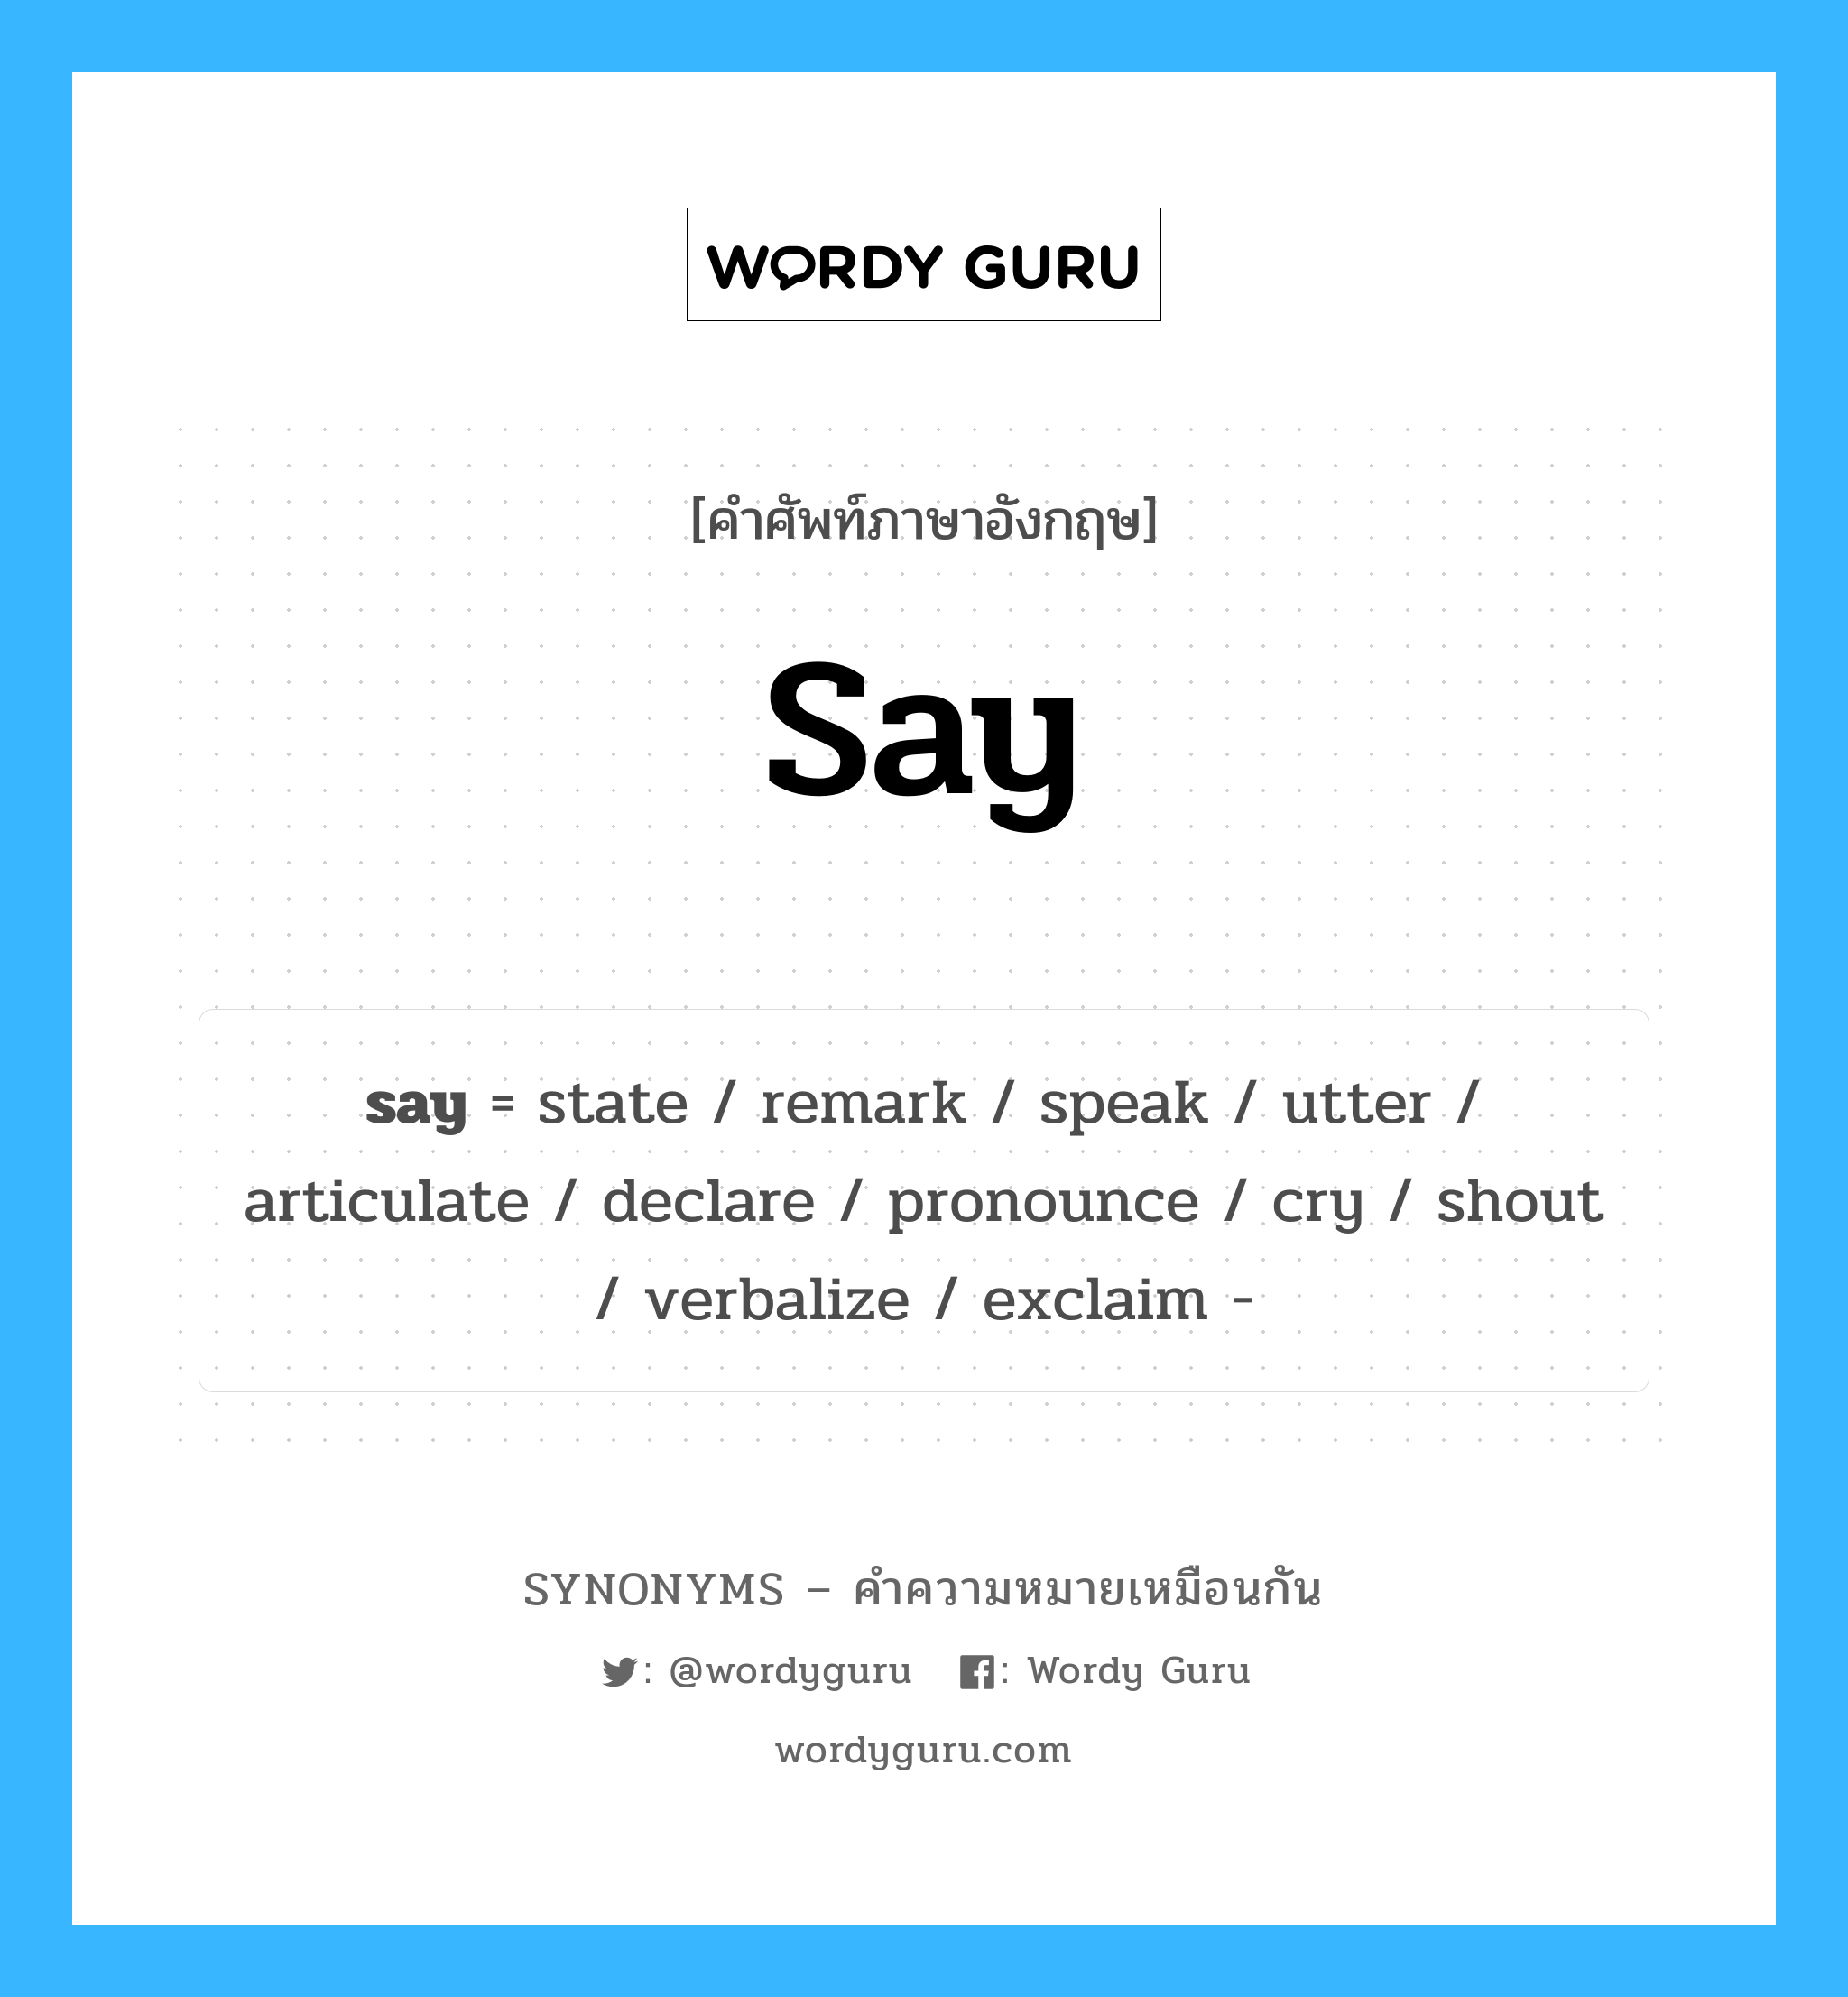 speak เป็นหนึ่งใน say และมีคำอื่น ๆ อีกดังนี้, คำศัพท์ภาษาอังกฤษ speak ความหมายคล้ายกันกับ say แปลว่า พูด หมวด say